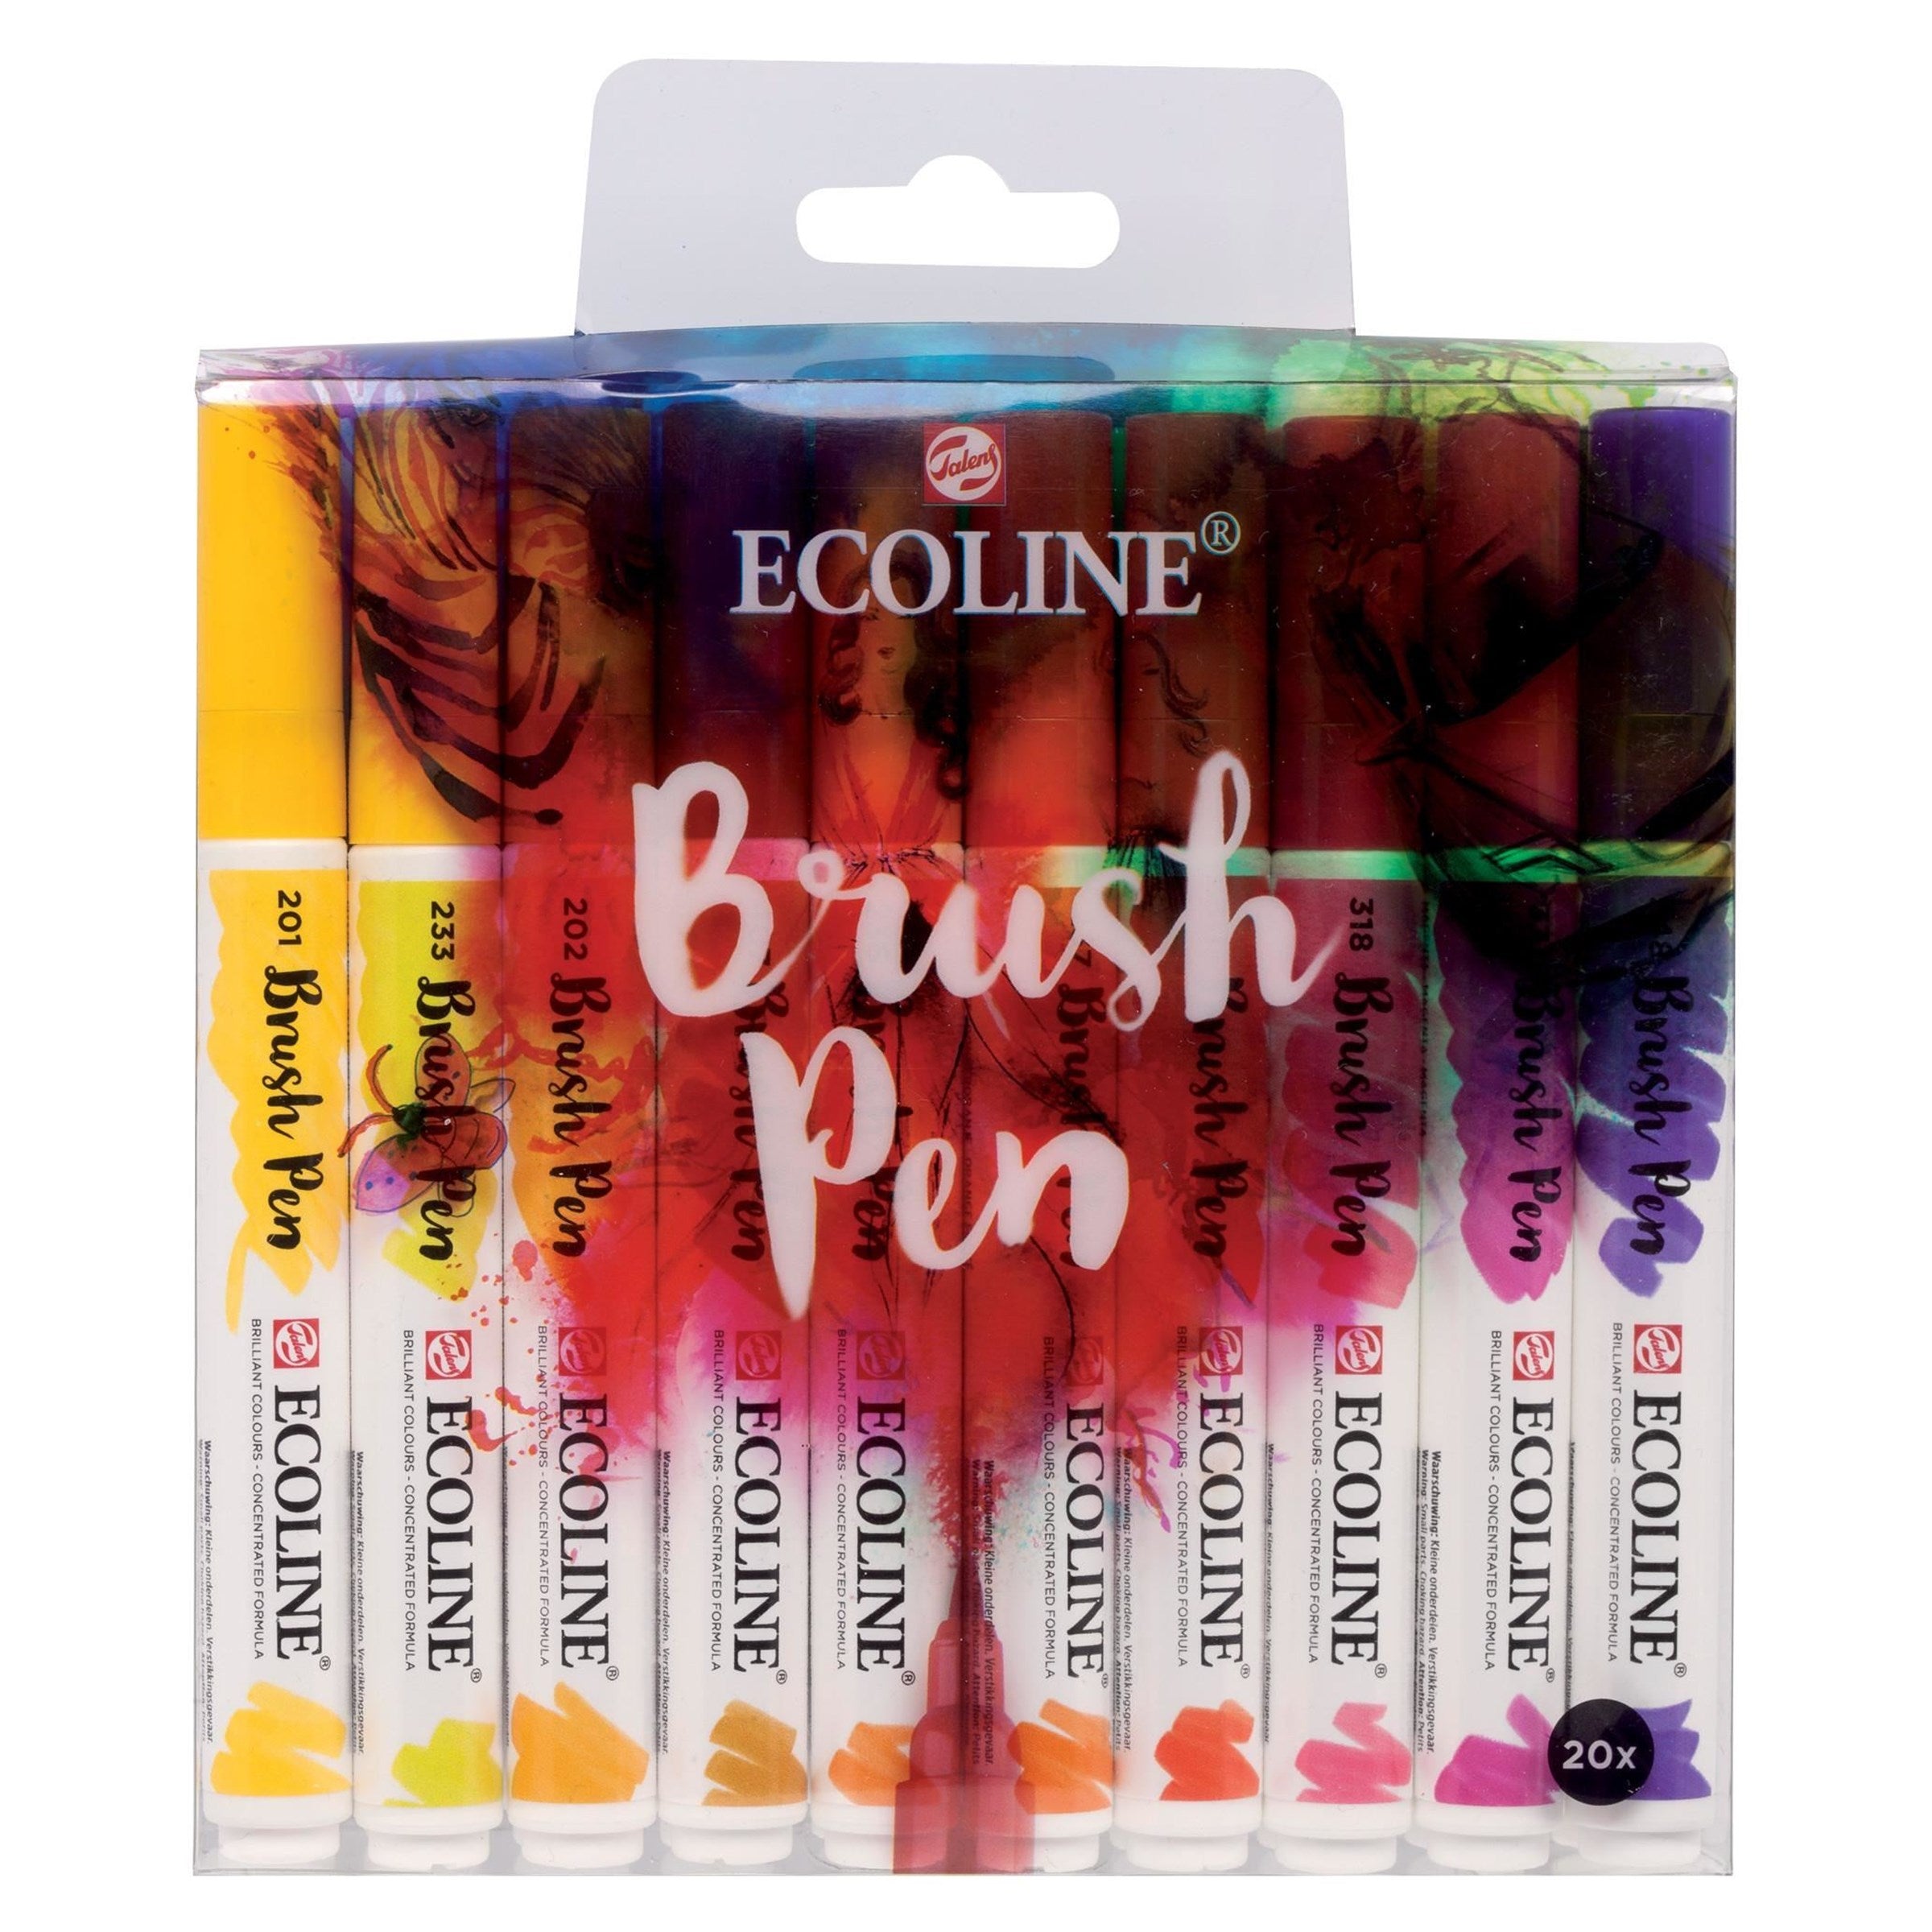 Ecoline Brush Pen set | 20 colours